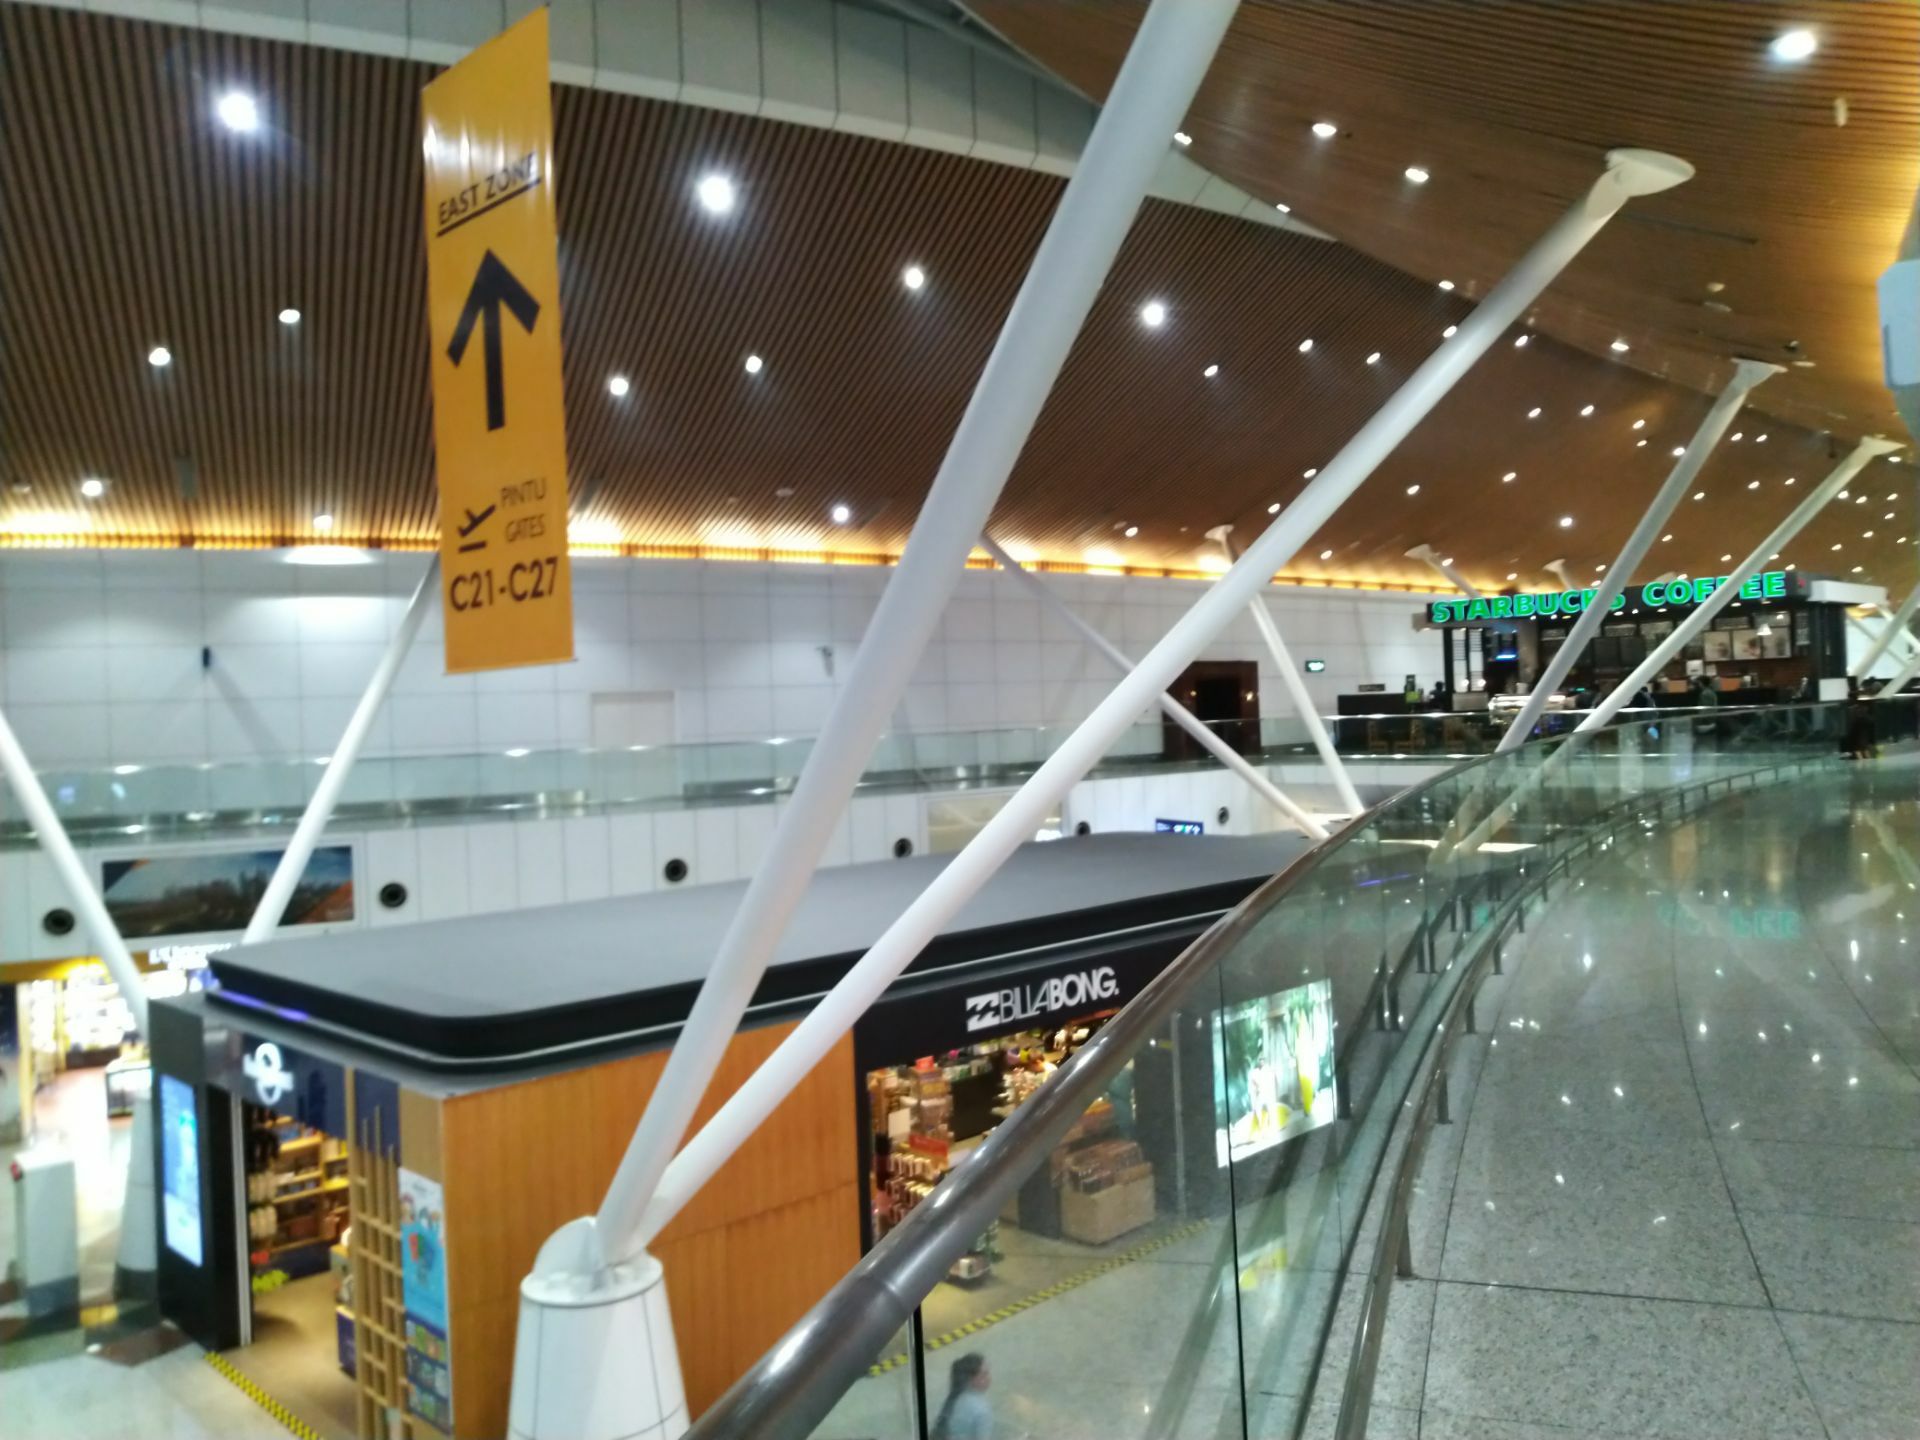 2019吉隆坡国际机场_旅游攻略_门票_地址_游记点评,雪邦旅游景点推荐 - 去哪儿攻略社区